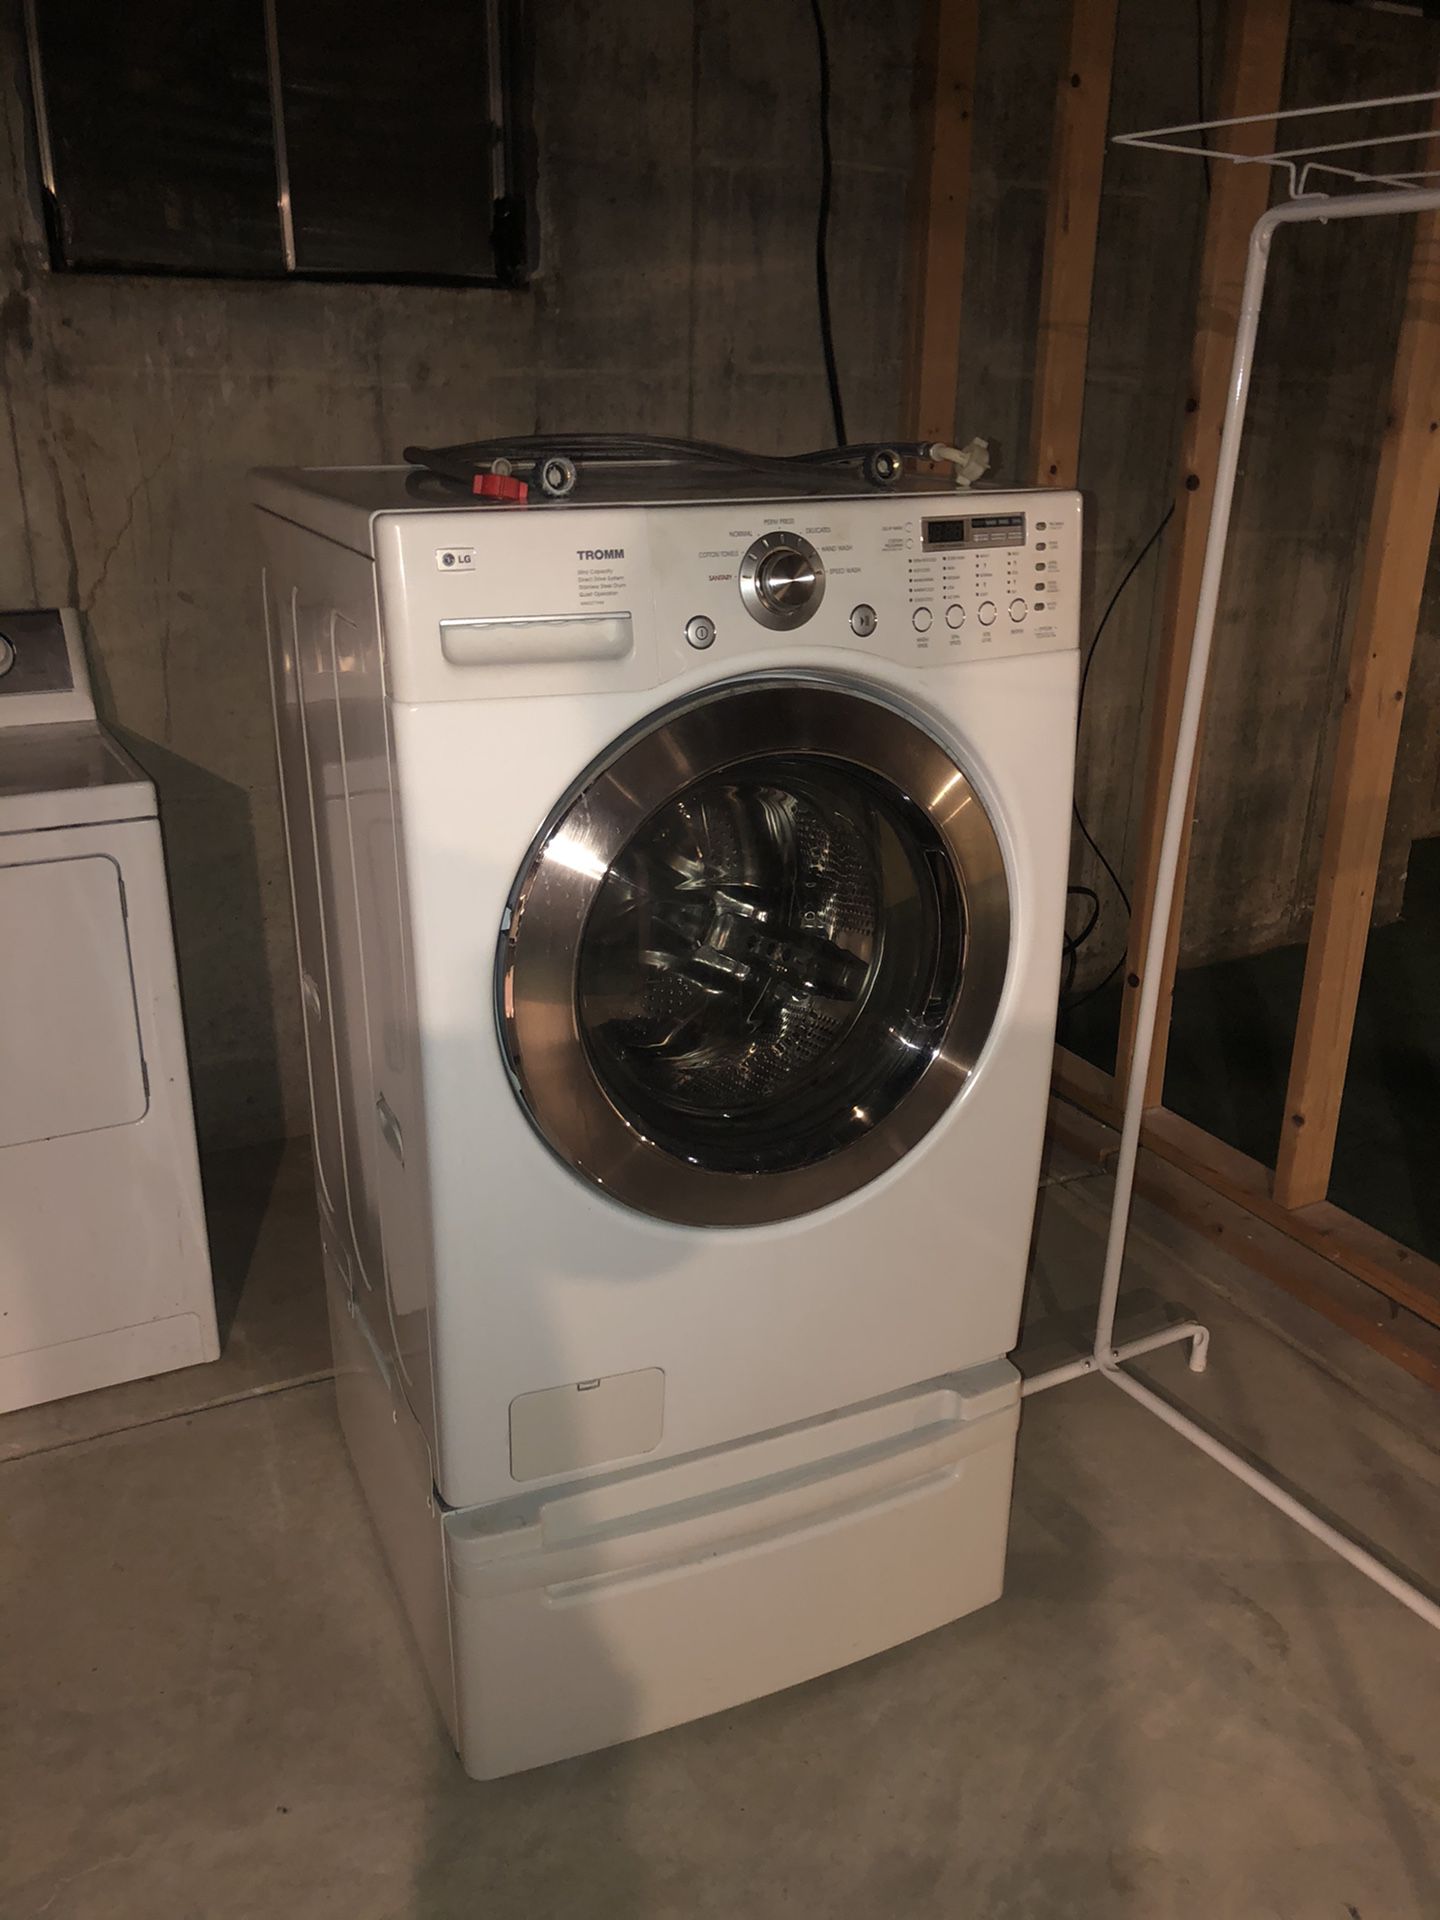 LG Tromm washer machine, needs bearing